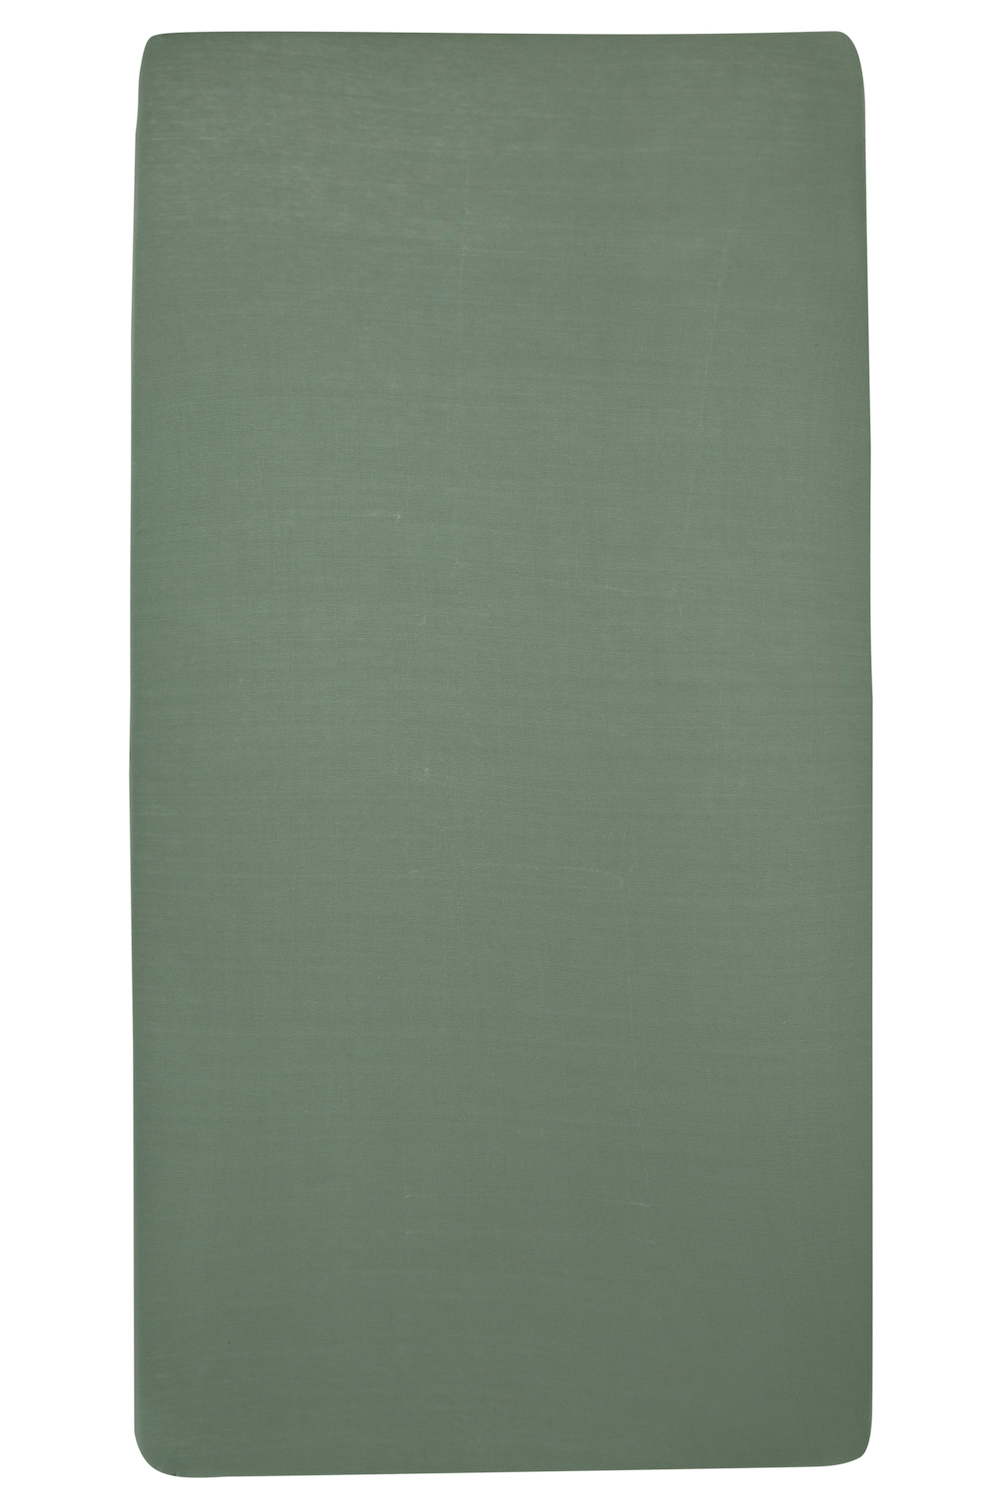 Hoeslaken eenpersoonsbed Uni - forest green - 90x210/220cm